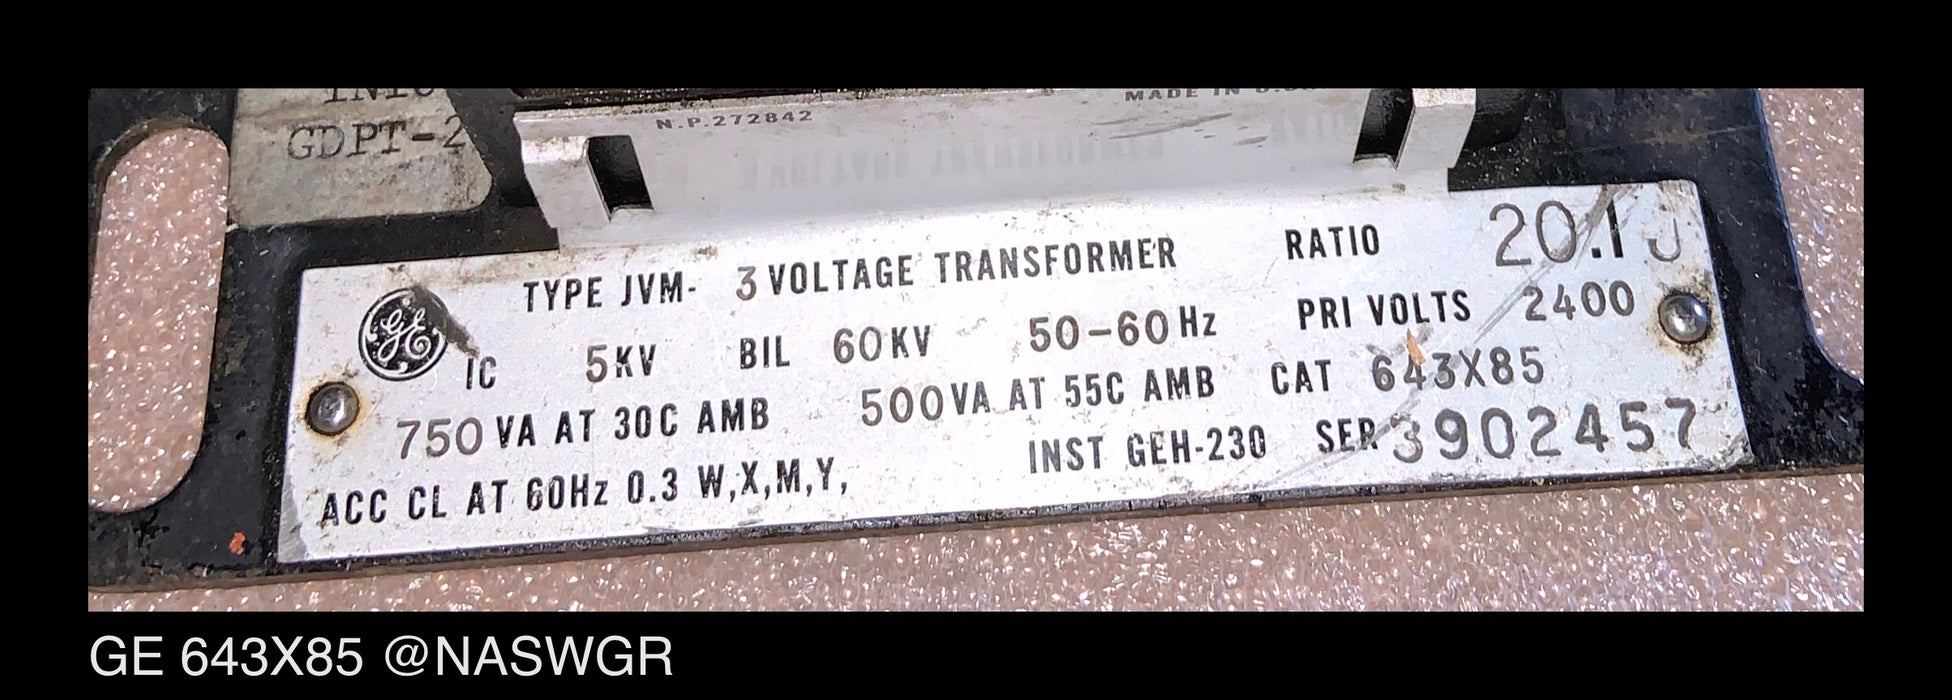 GE 643X85 Voltage Transformer